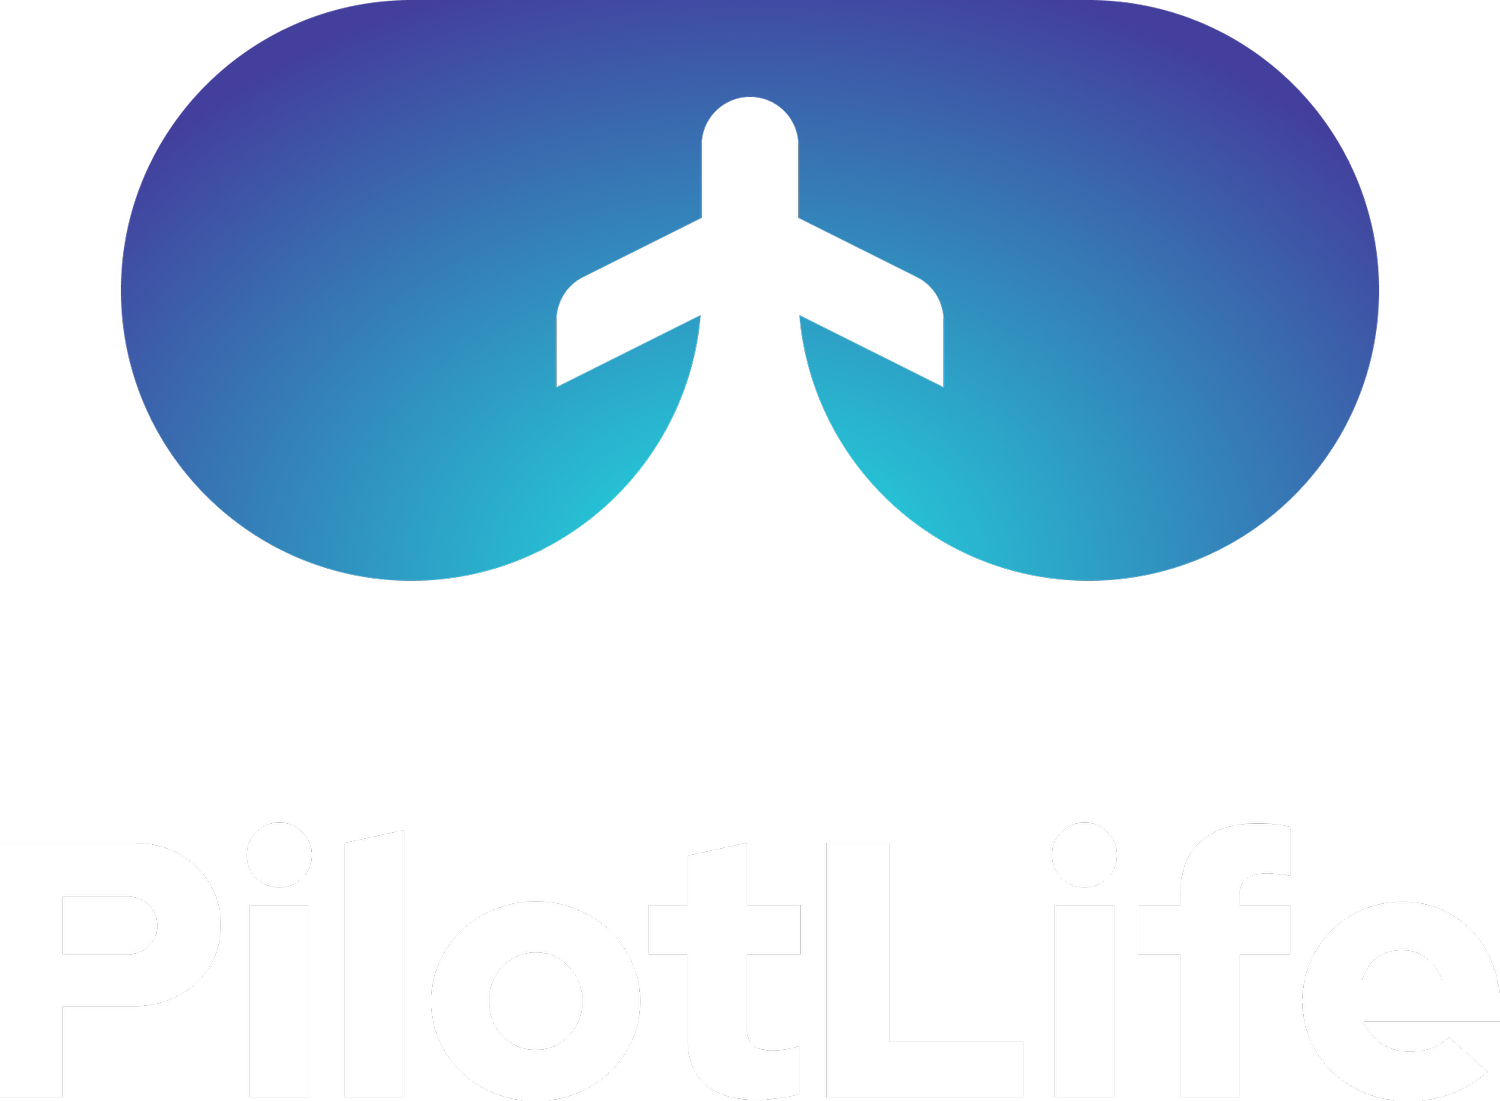 Pilot Life